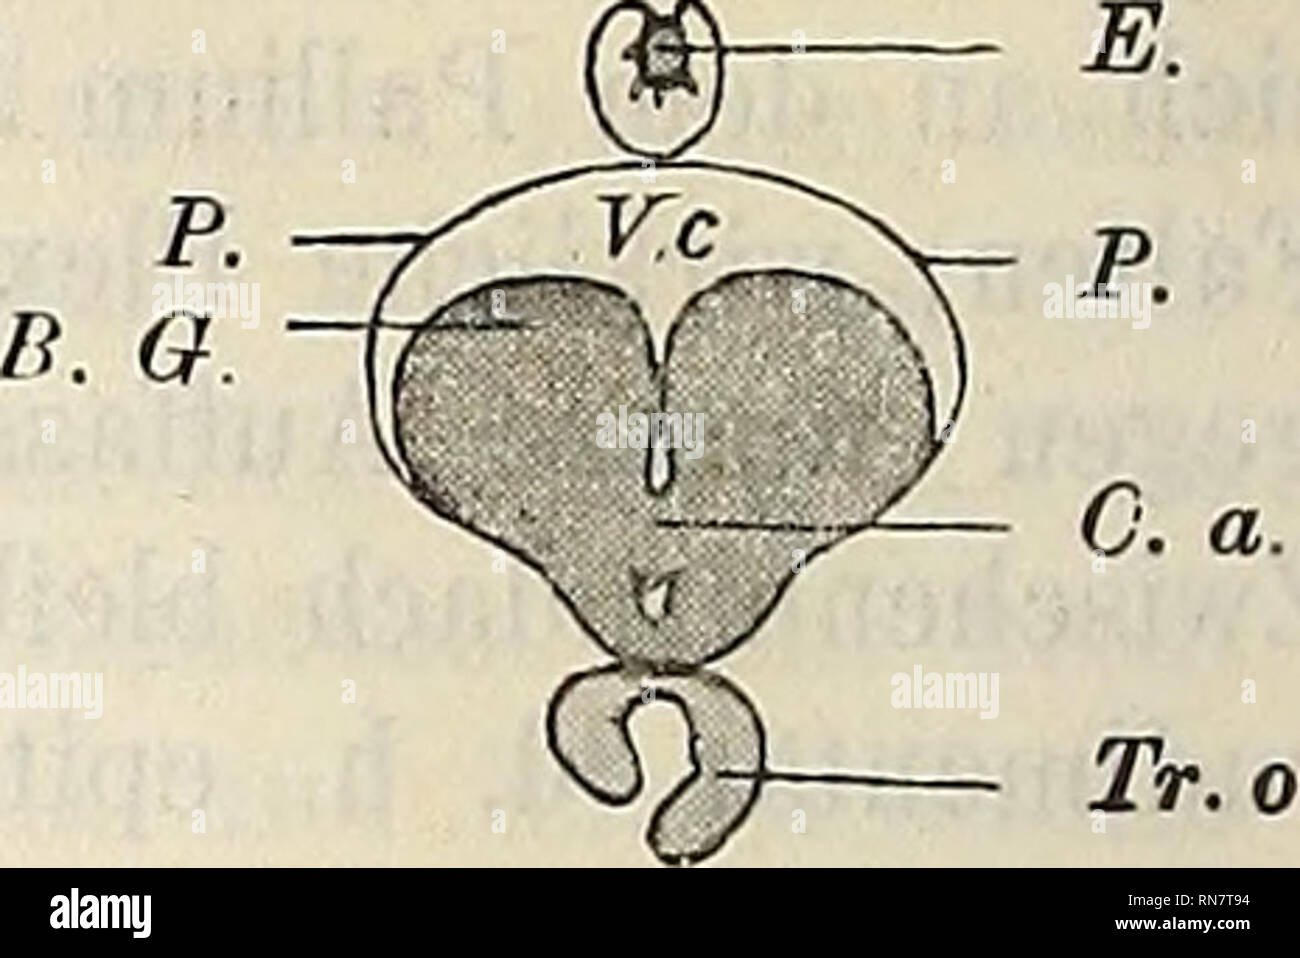 . Anatomischer Anzeiger. Anatomy, Comparative. Fig. 3.. Fig. 4. Fig. 5. P. Tr. olf. Rh. Fig. 6. Fig. 7. Tr. olf. B. olf. Rh. Erklärung der Figuren 1—7. Aus einer Schnittserie des Gehirns der Plötze (Leuciscus rutilus) schwache Ver- größerung, Zeichenapparat. Fig. 1. Gegend der Ganglia habenulae. Das Mesencephalon (Lobi optici auct.) ist gleichzeitig angeschnitten. Fig. 2. Thalamusgegeud. Die Basal-(Stamm-)Ganglien tauchen auf. Fig 3. Gegend der Commissura anterior. Fig. 4. Tractus olfactorii an der Basis der Stammganglien. Fig. 5. Tractus olfactorii in je zwei Stränge zerfallend, liegen im Gru Stock Photo